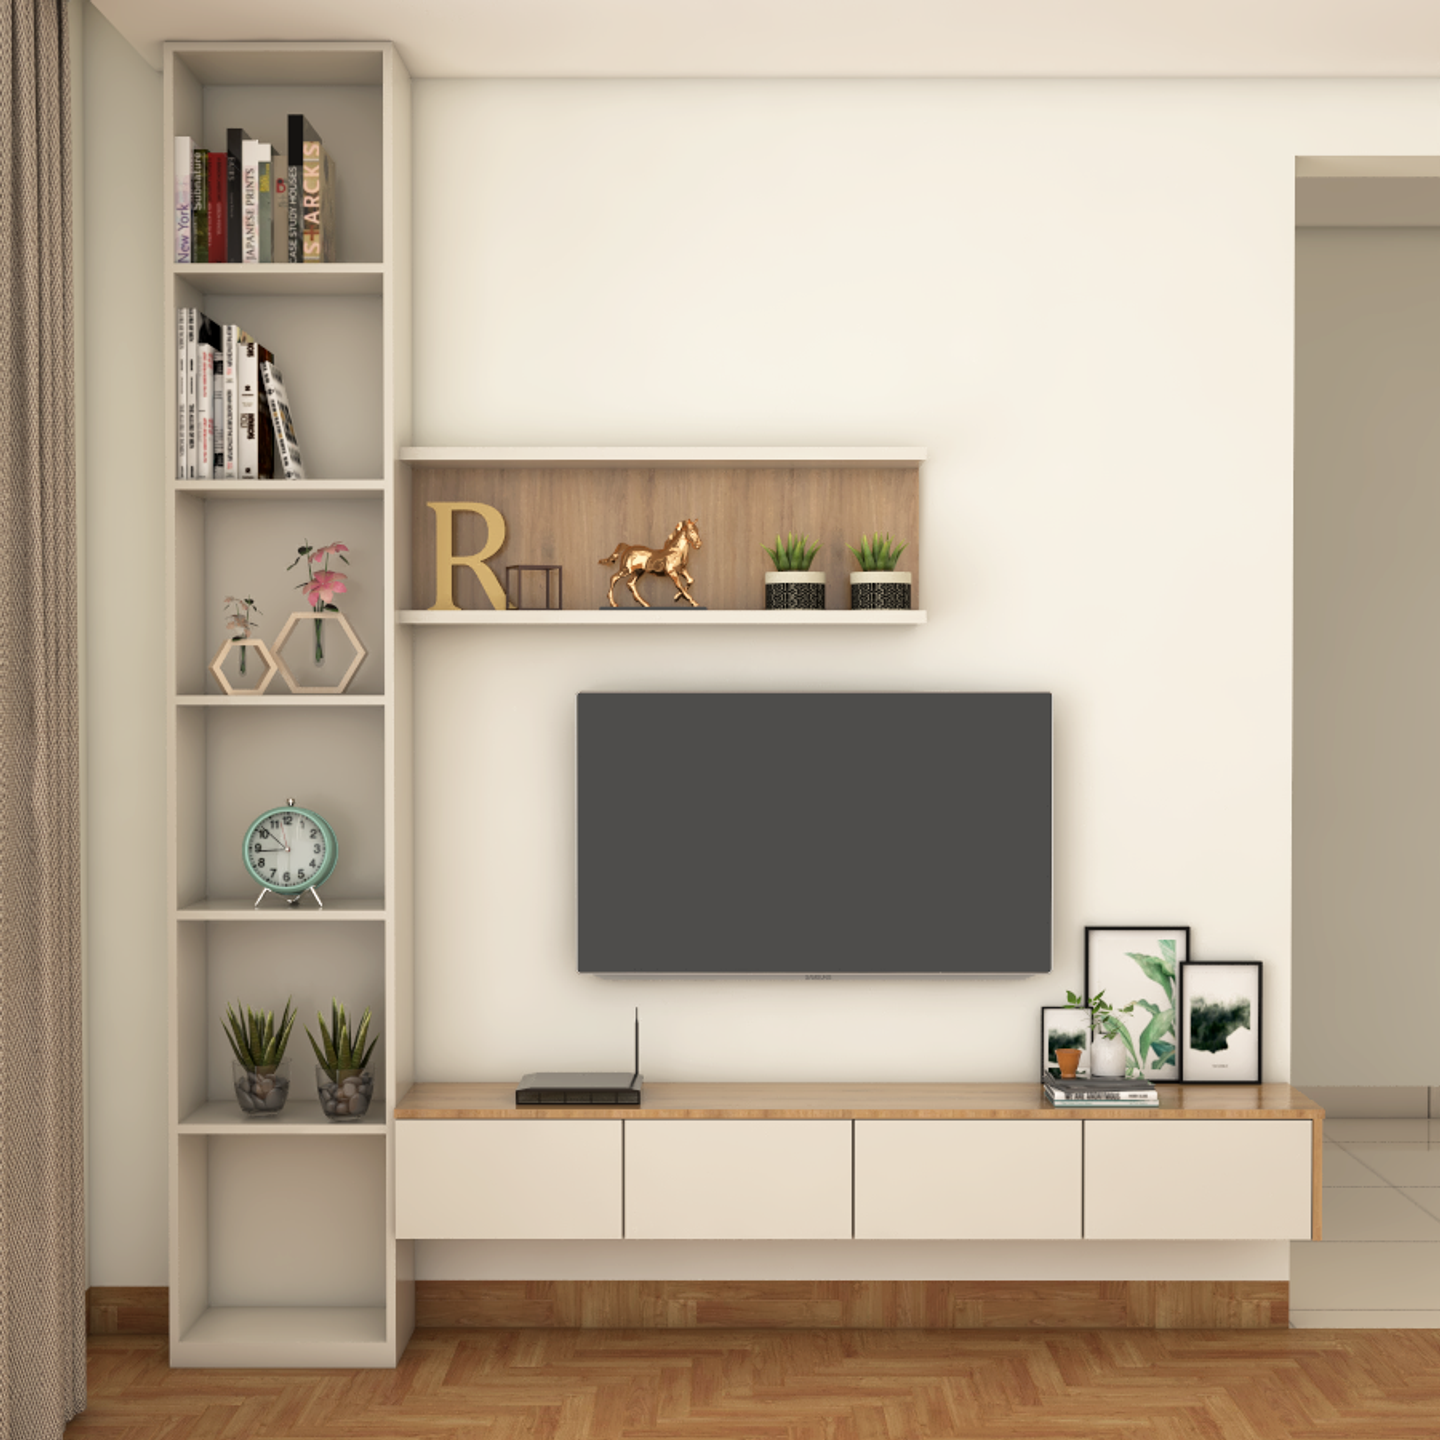 Modern Living Room - Livspace